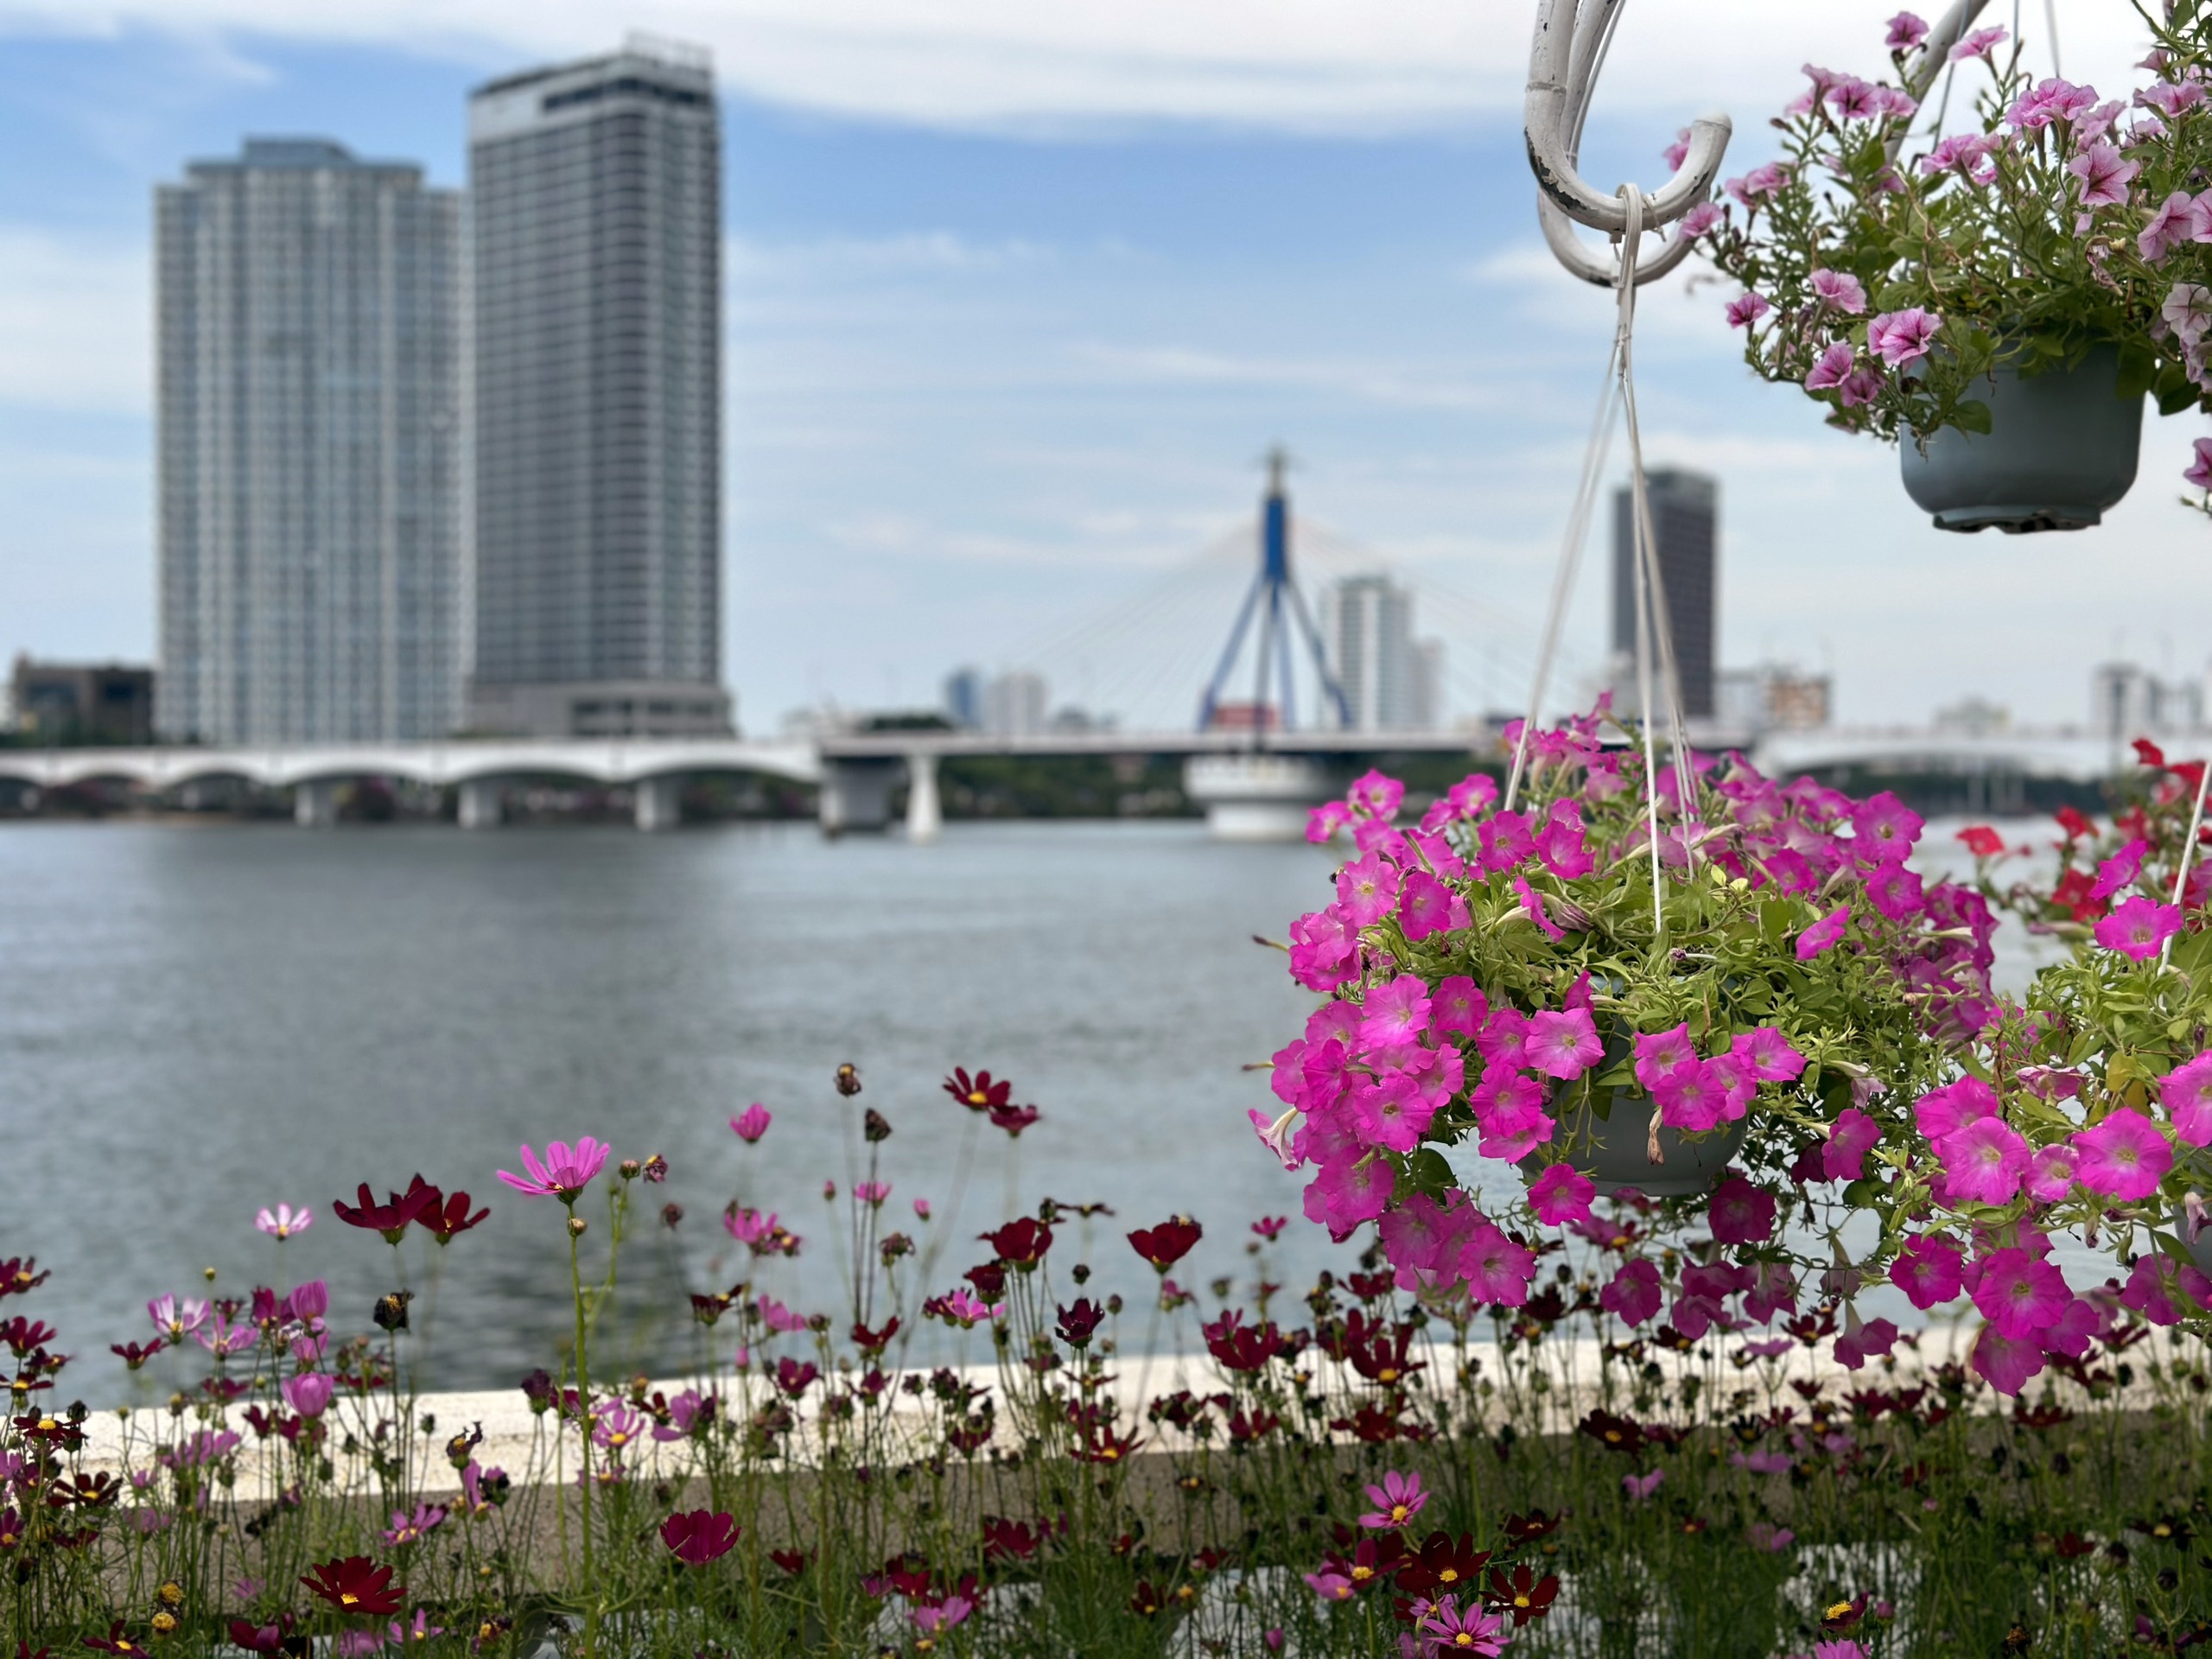 Khu vực sông Hàn thêm đẹp với các loài hoa